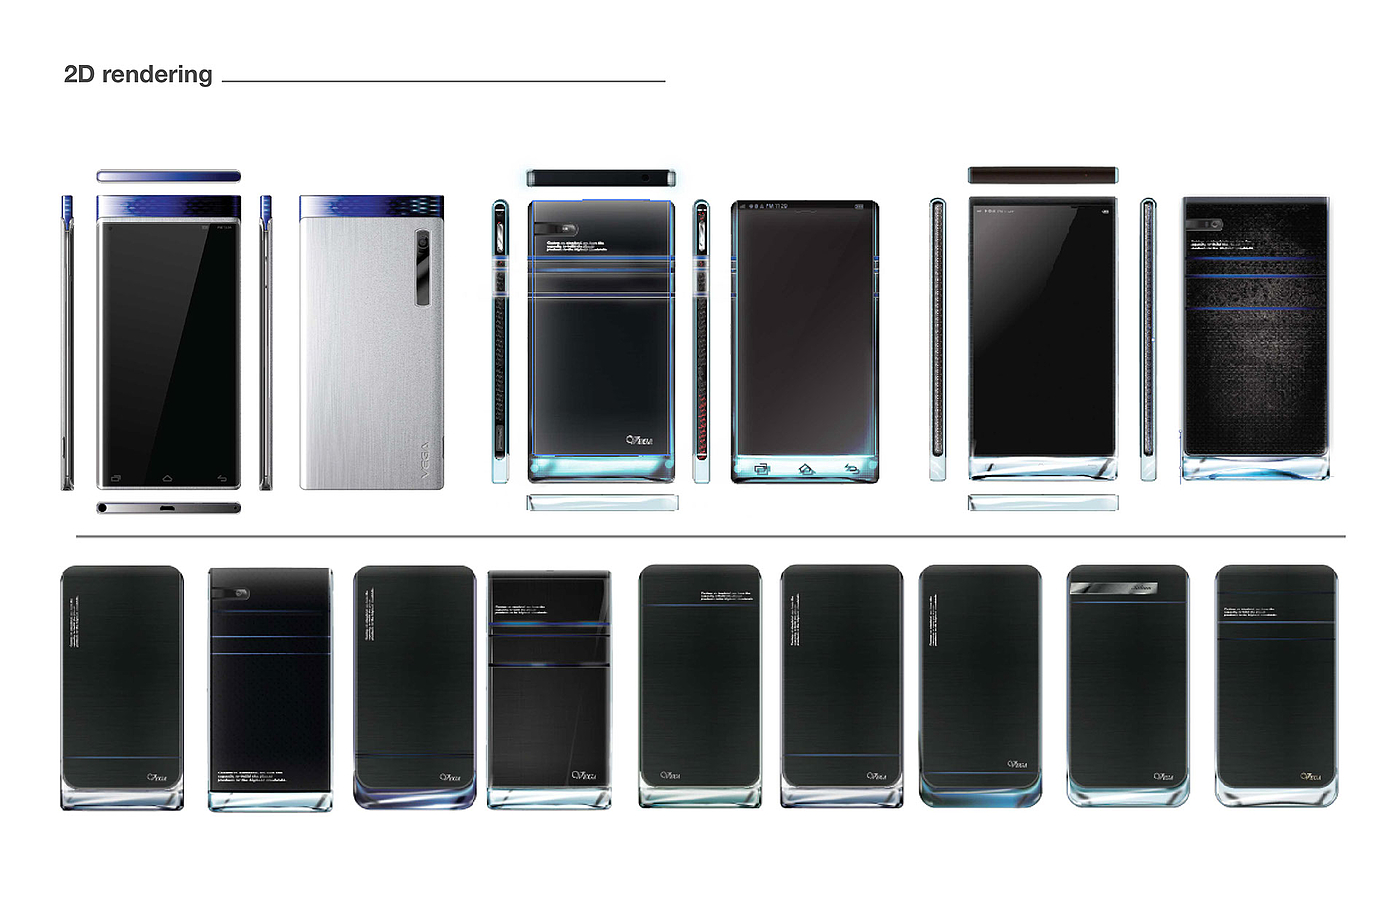 Vega，蓝色，奢华，玻璃，cmf，贵族，智能手机，